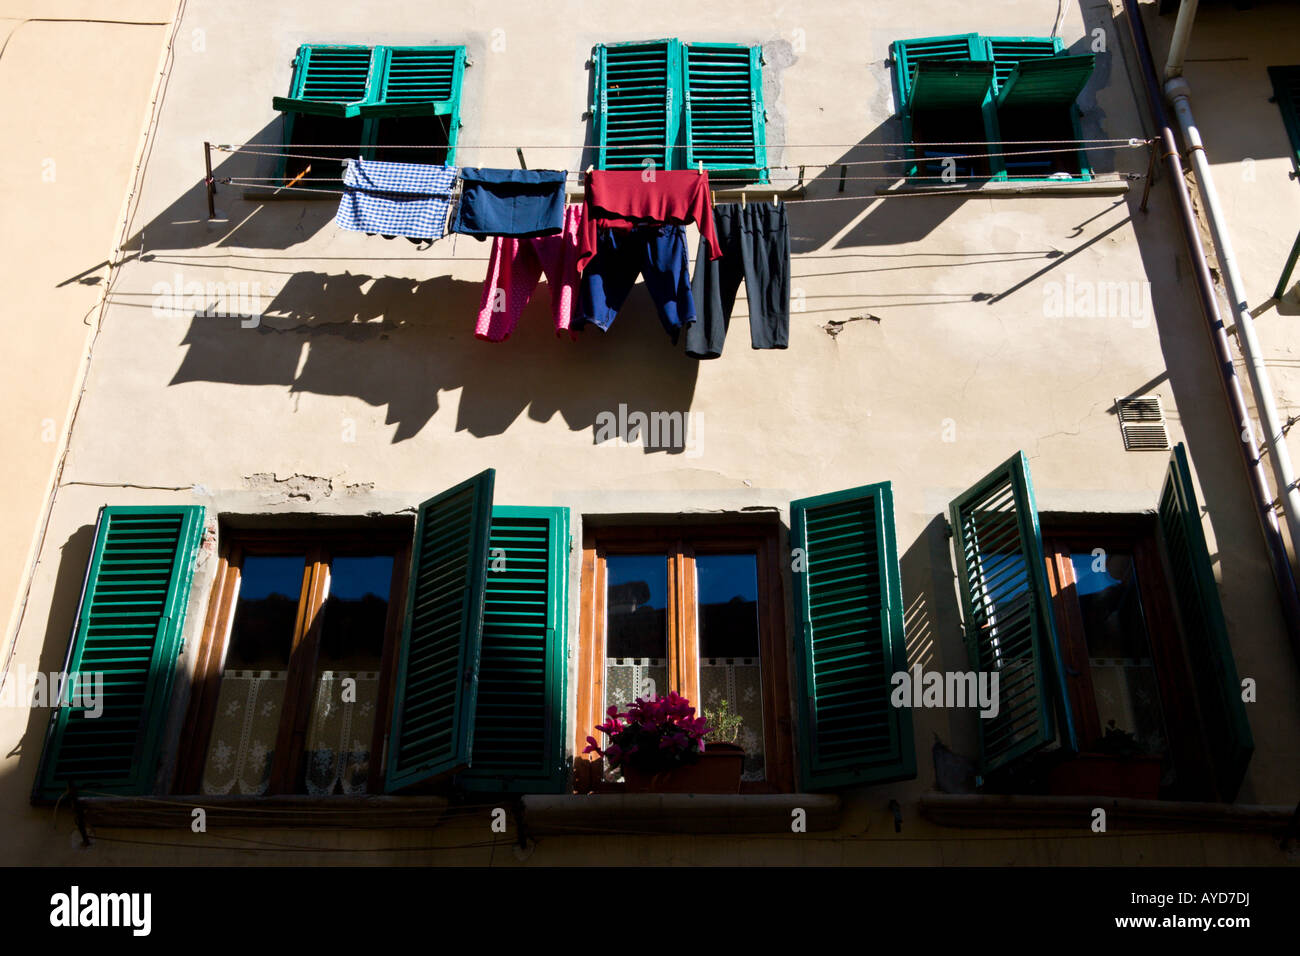 Biancheria stesa ad asciugare da finestre con persiane in una strada a Firenze. Foto Stock